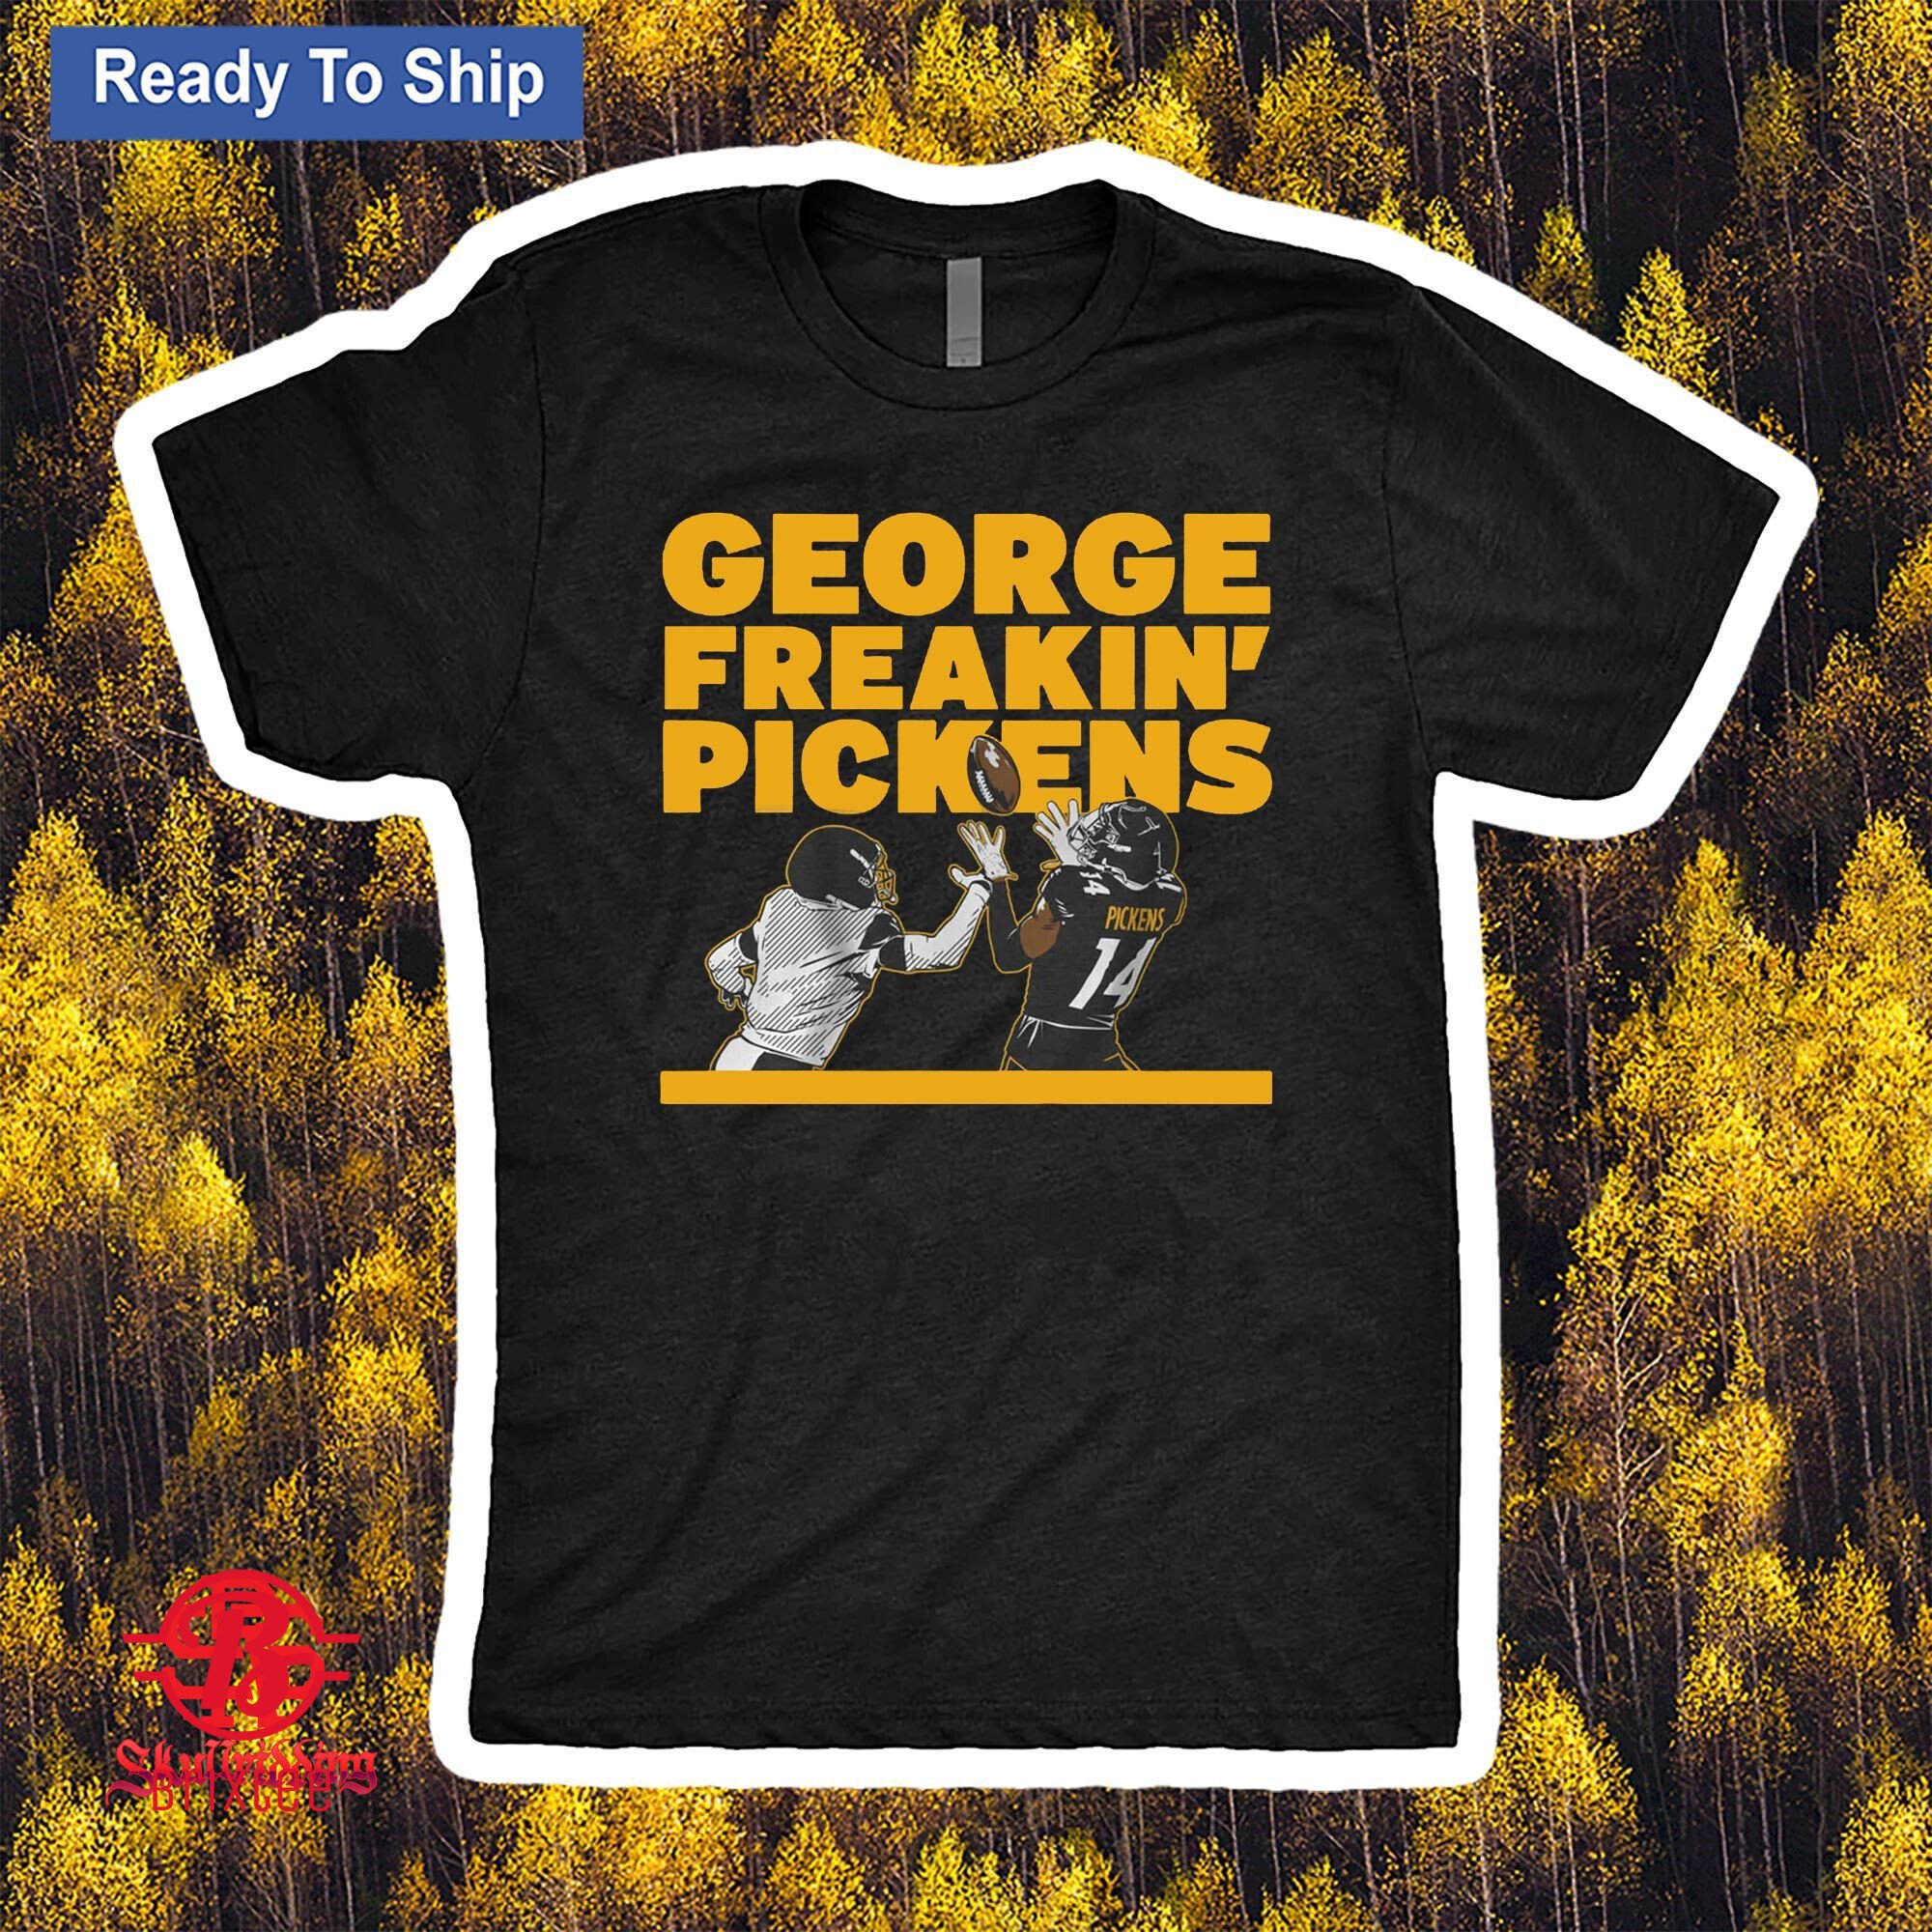 George Freakin' Pickens T-Shirt - George Pickens - Pittsburgh Steelers